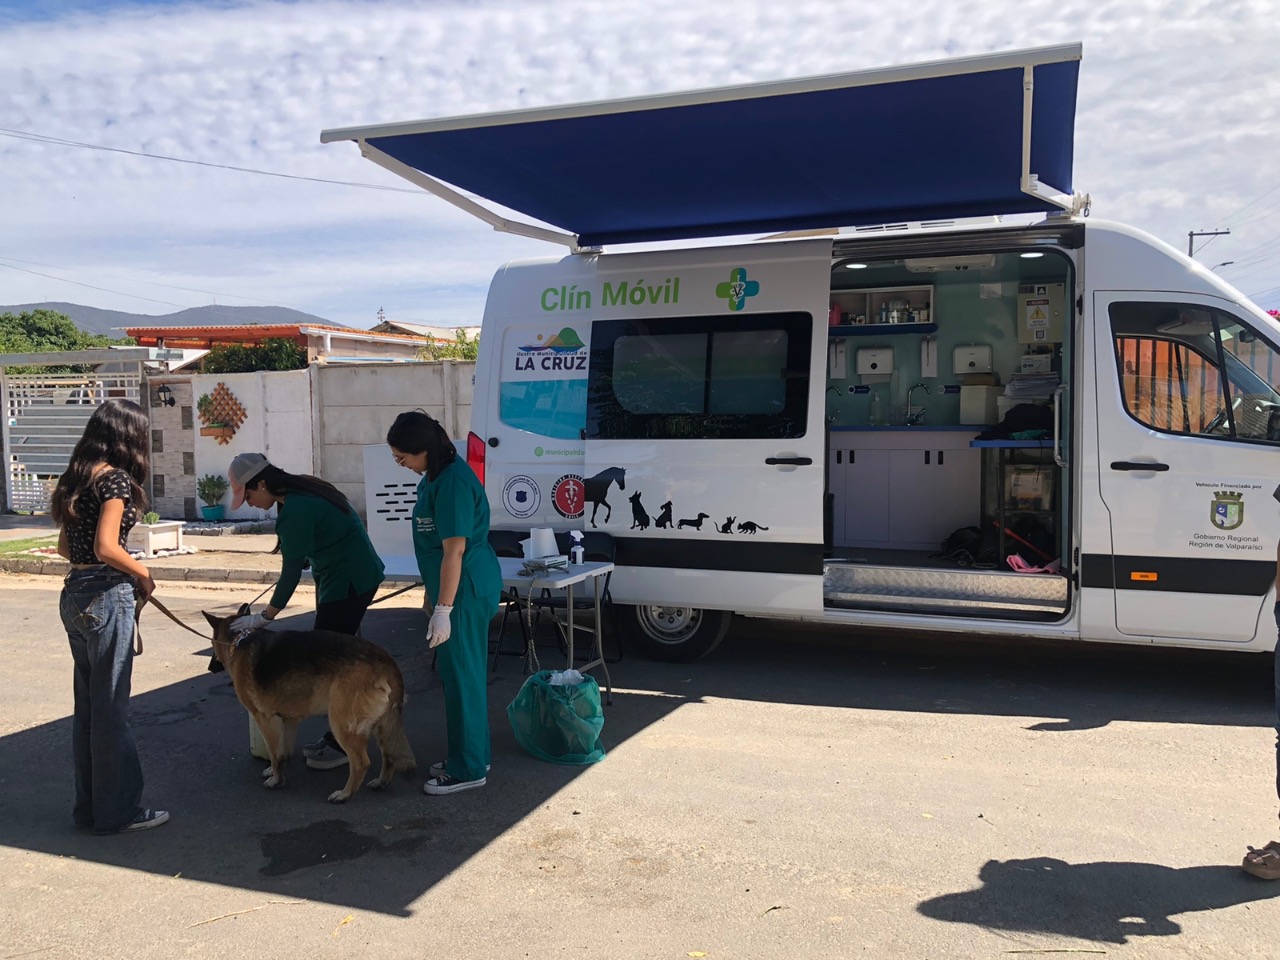 Baños sanitarios gratuitos para perros en La Cruz fechas y lugares